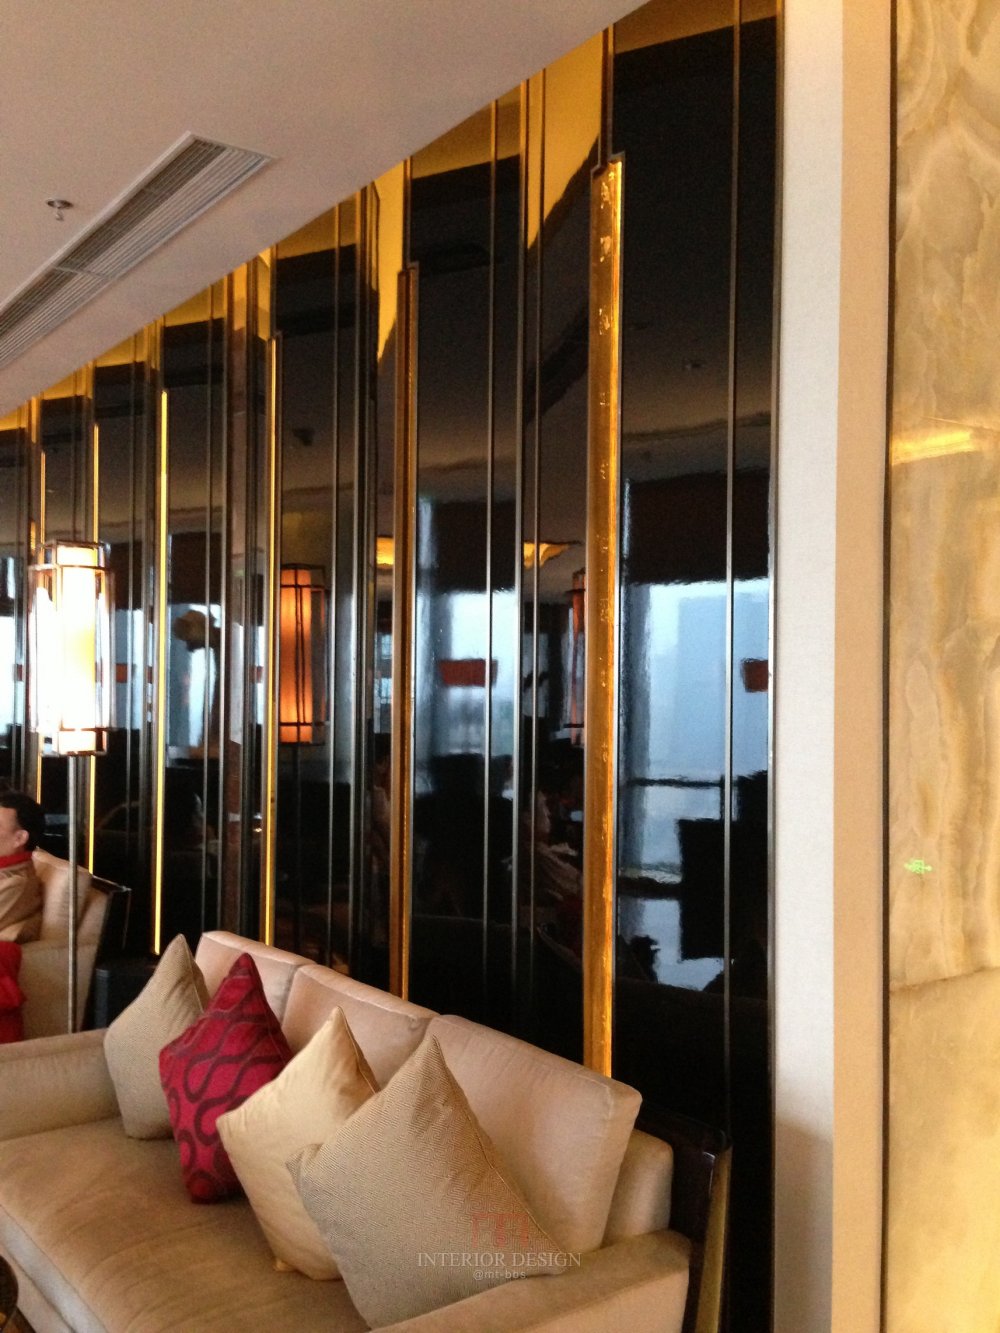 成都丽思卡尔顿酒店The Ritz-Carlton Chengdu(欢迎更新,高分奖励)_IMG_6414.JPG